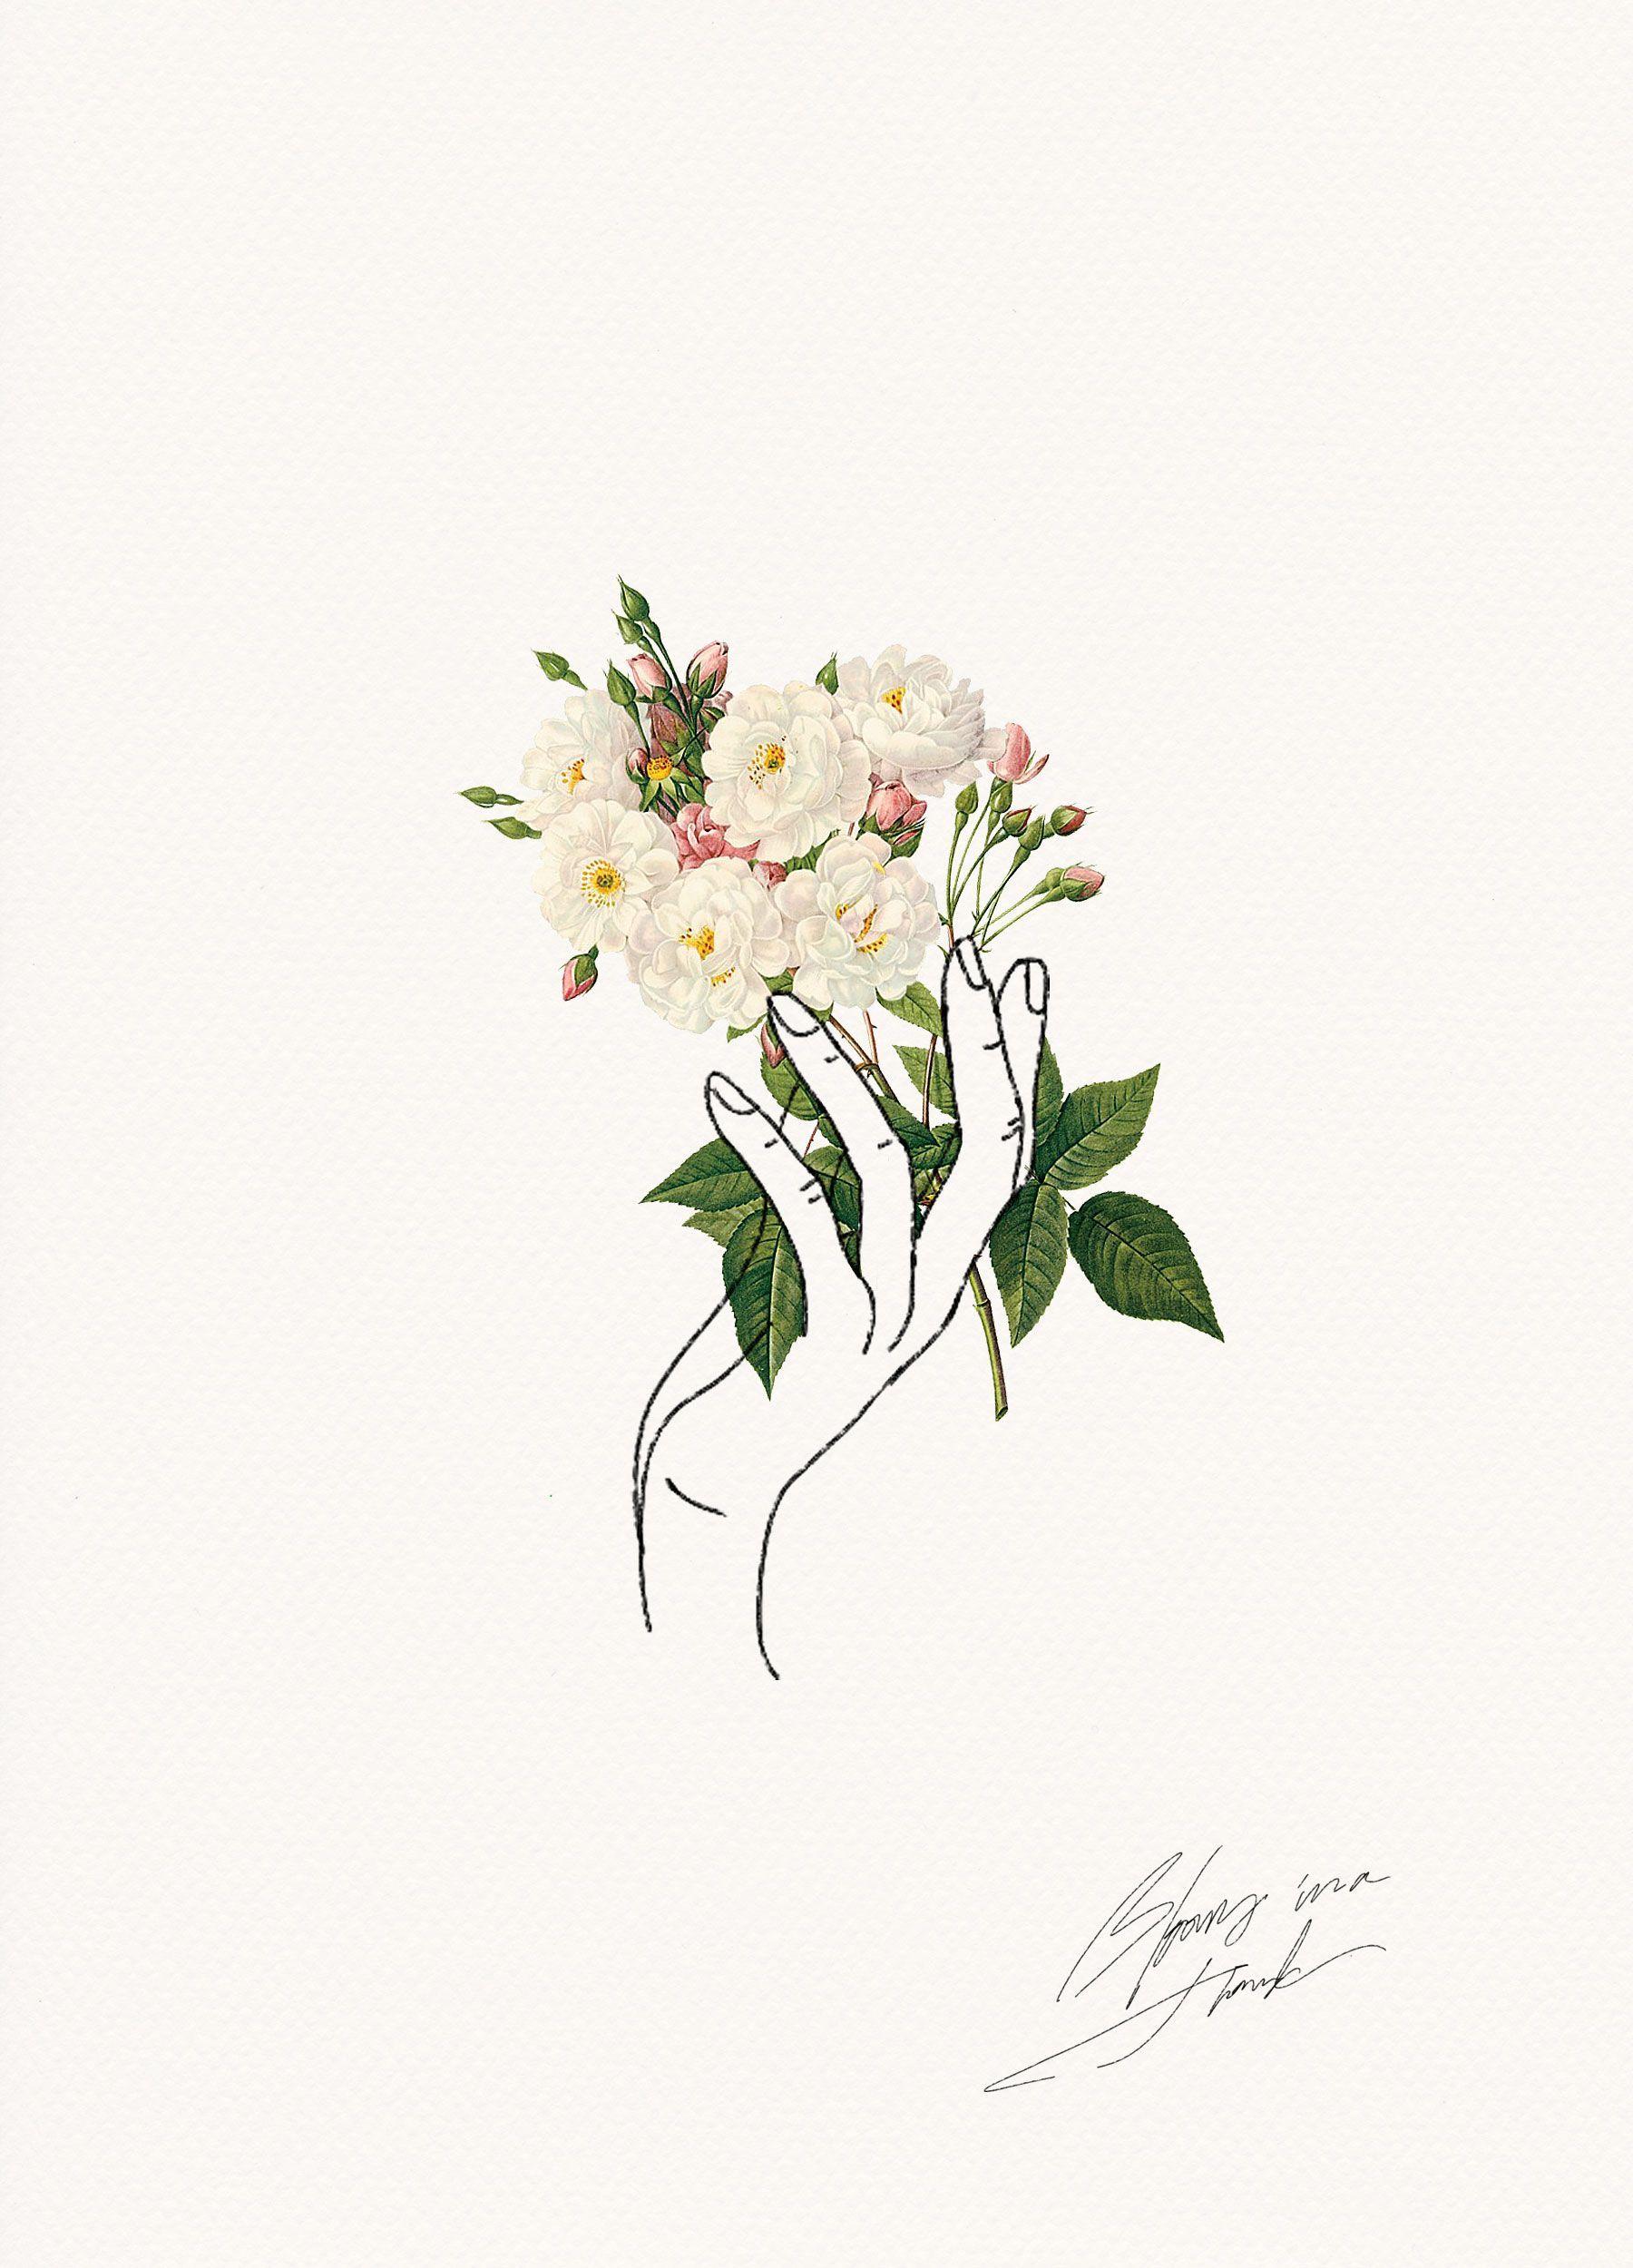 Hand Holding Flower Logo - HOLDING FLOWERS | Design | Pinterest | Drawings, Art and Illustration